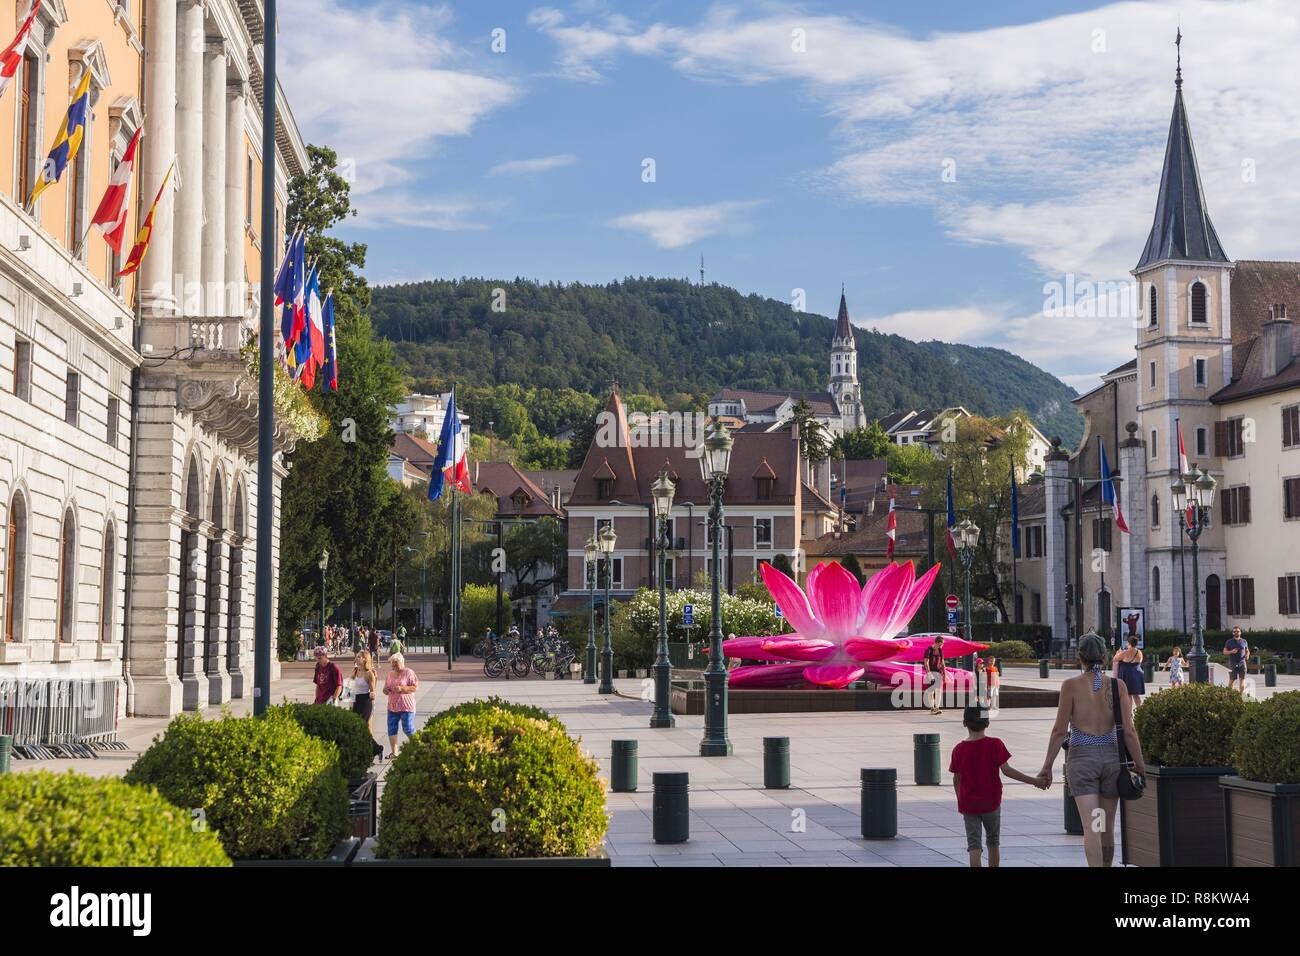 Francia, Haute Savoie, Annecy, la ciudad vieja, la plaza del ayuntamiento a la izquierda, la Basílica de la Visitación de la Virgen y de San Francisco de Sales iglesia en derecho Foto de stock